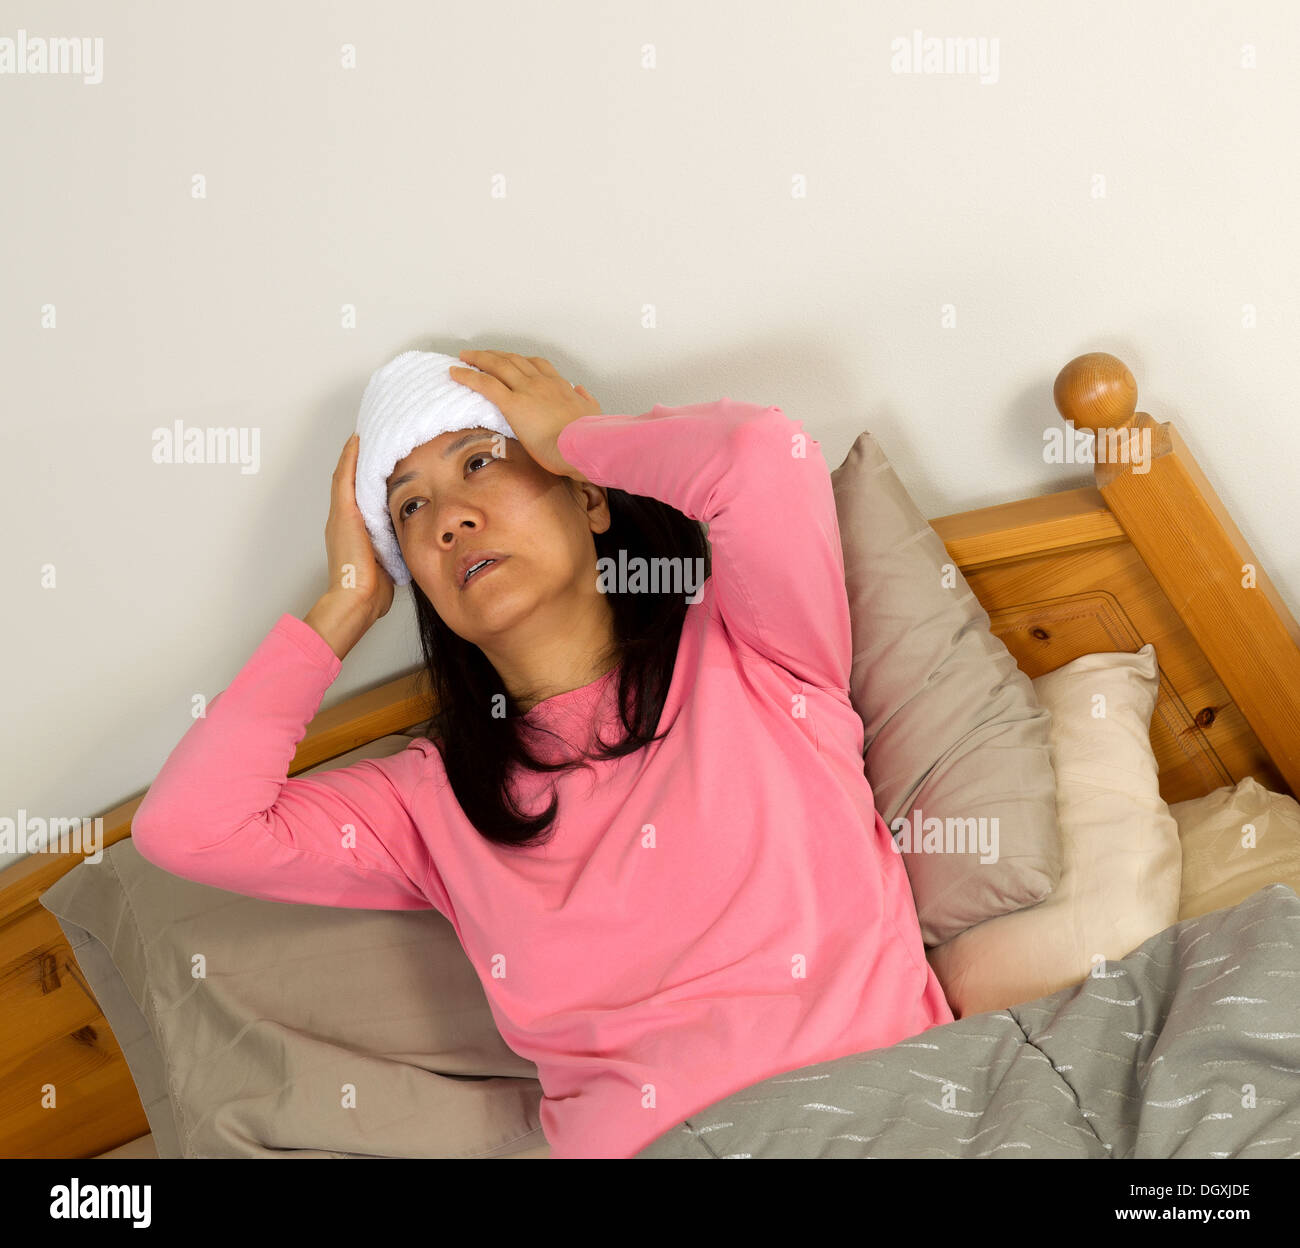 Foto von Reife Frau Fieber zu behandeln, indem Sie Waschlappen an ihrer  Stirn halten, beim liegen im Bett Stockfotografie - Alamy